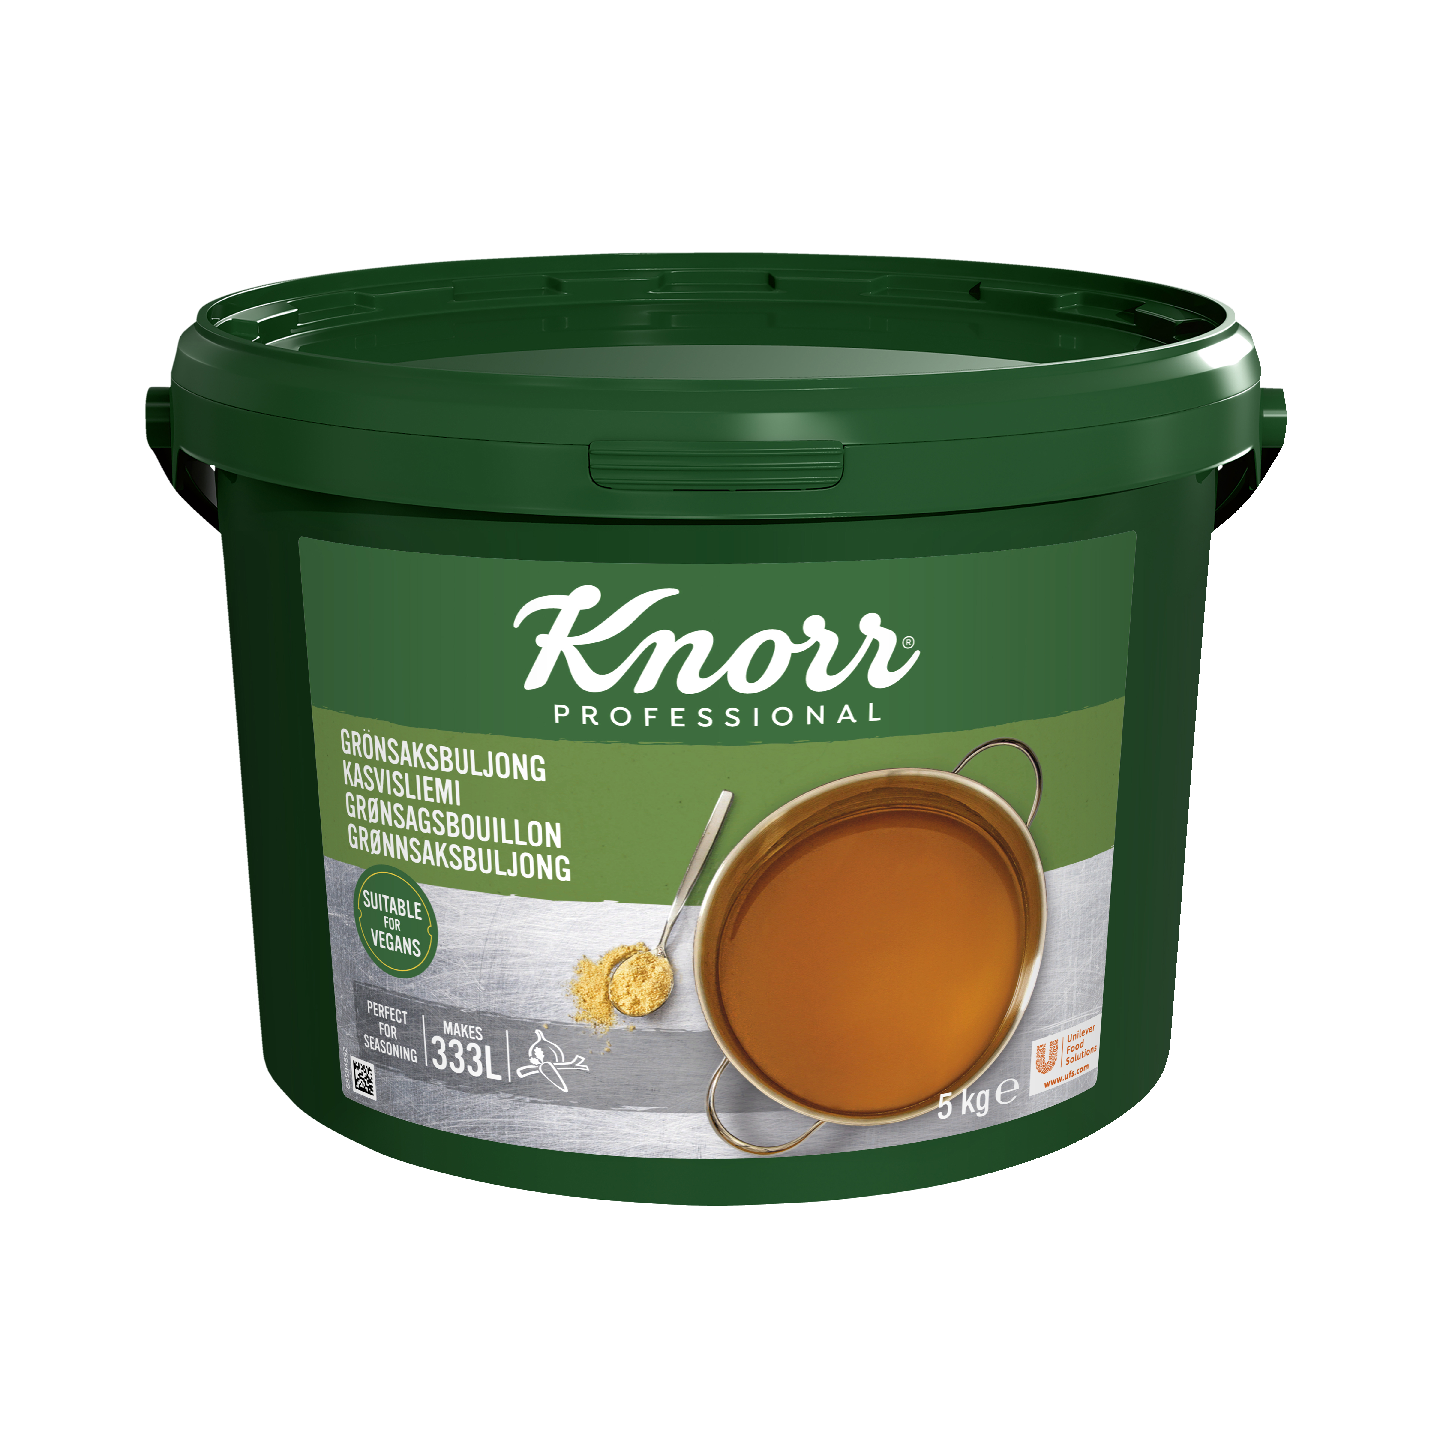 Knorr kasvisliemi 5kg/333l